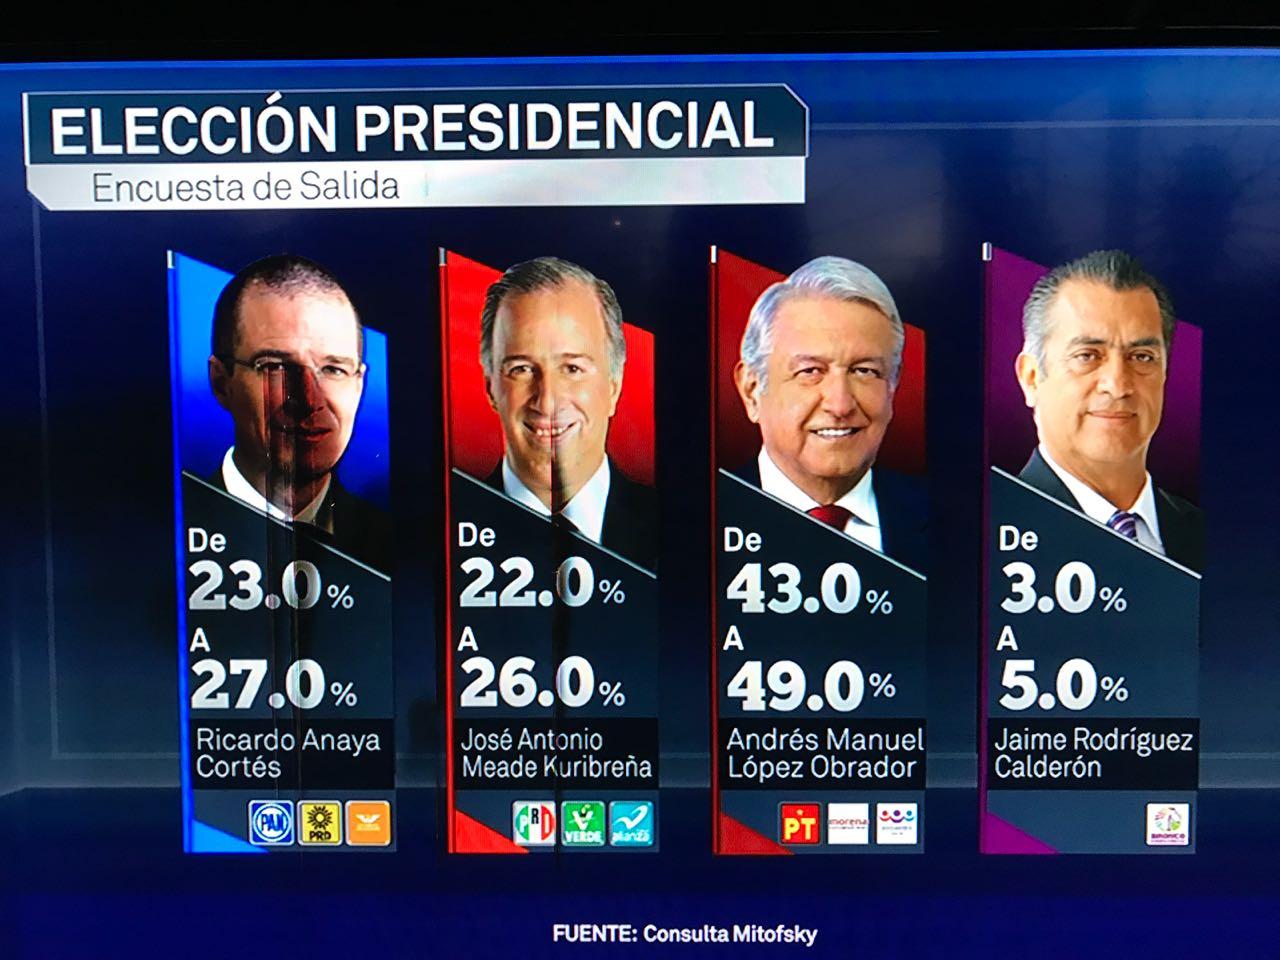 Andrés Manuel encabeza la elección presidencial: Mitofsky